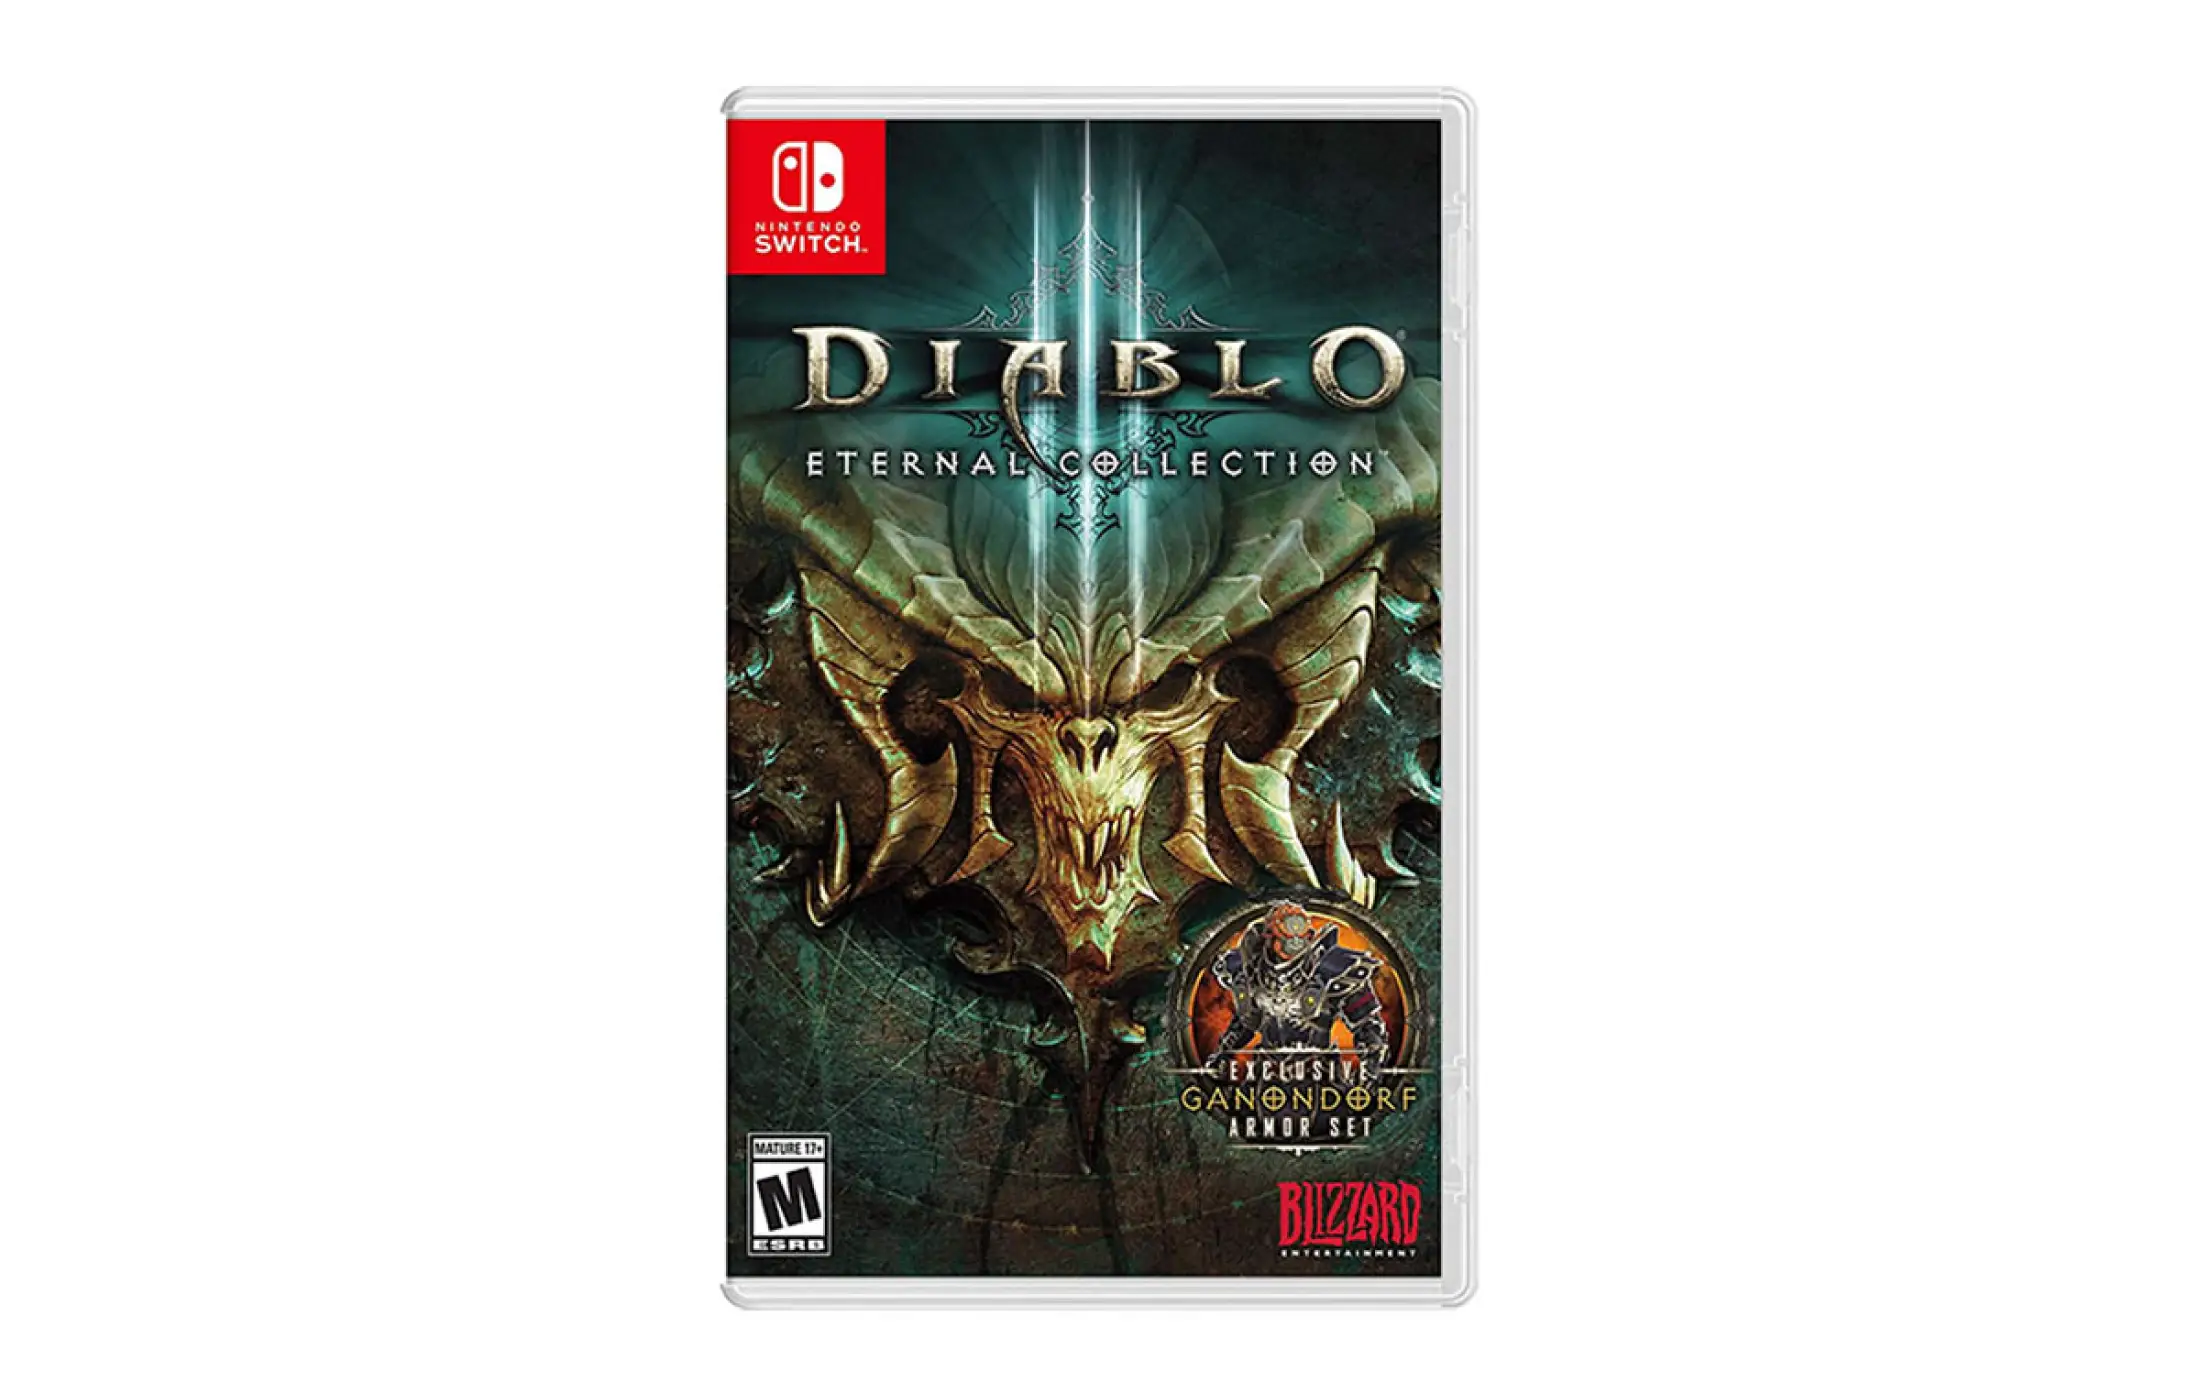 Diablo 2 nintendo switch. Diablo 3 Nintendo Switch. Diablo 3 Eternal collection. Diablo III: Eternal collection Nintendo. Диабло 3 свитч.